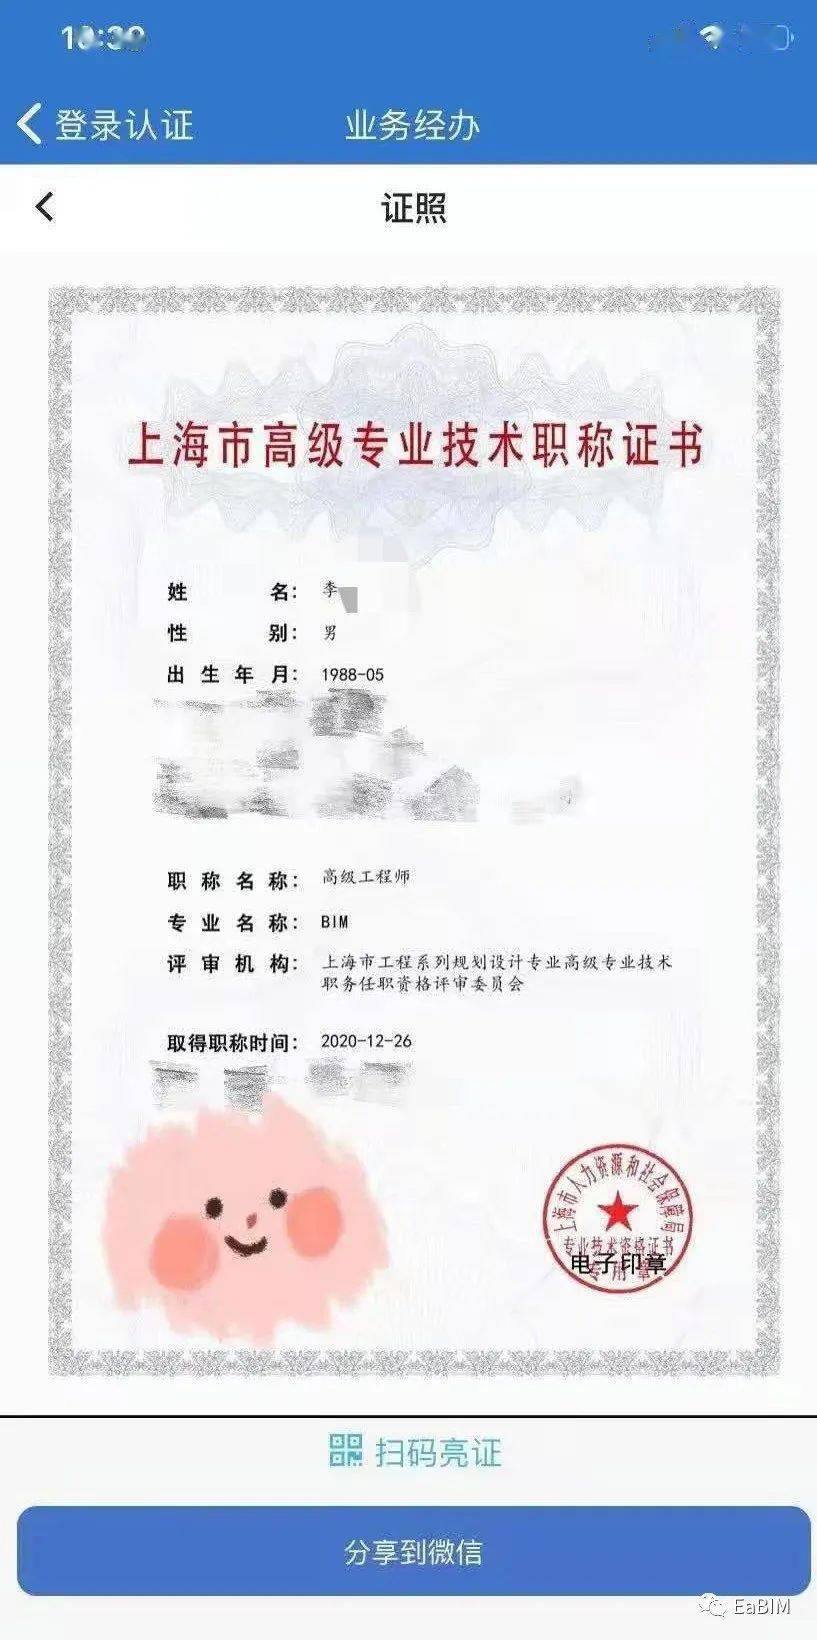 上海市bim专业方向的首批高级工程师职称证书下发